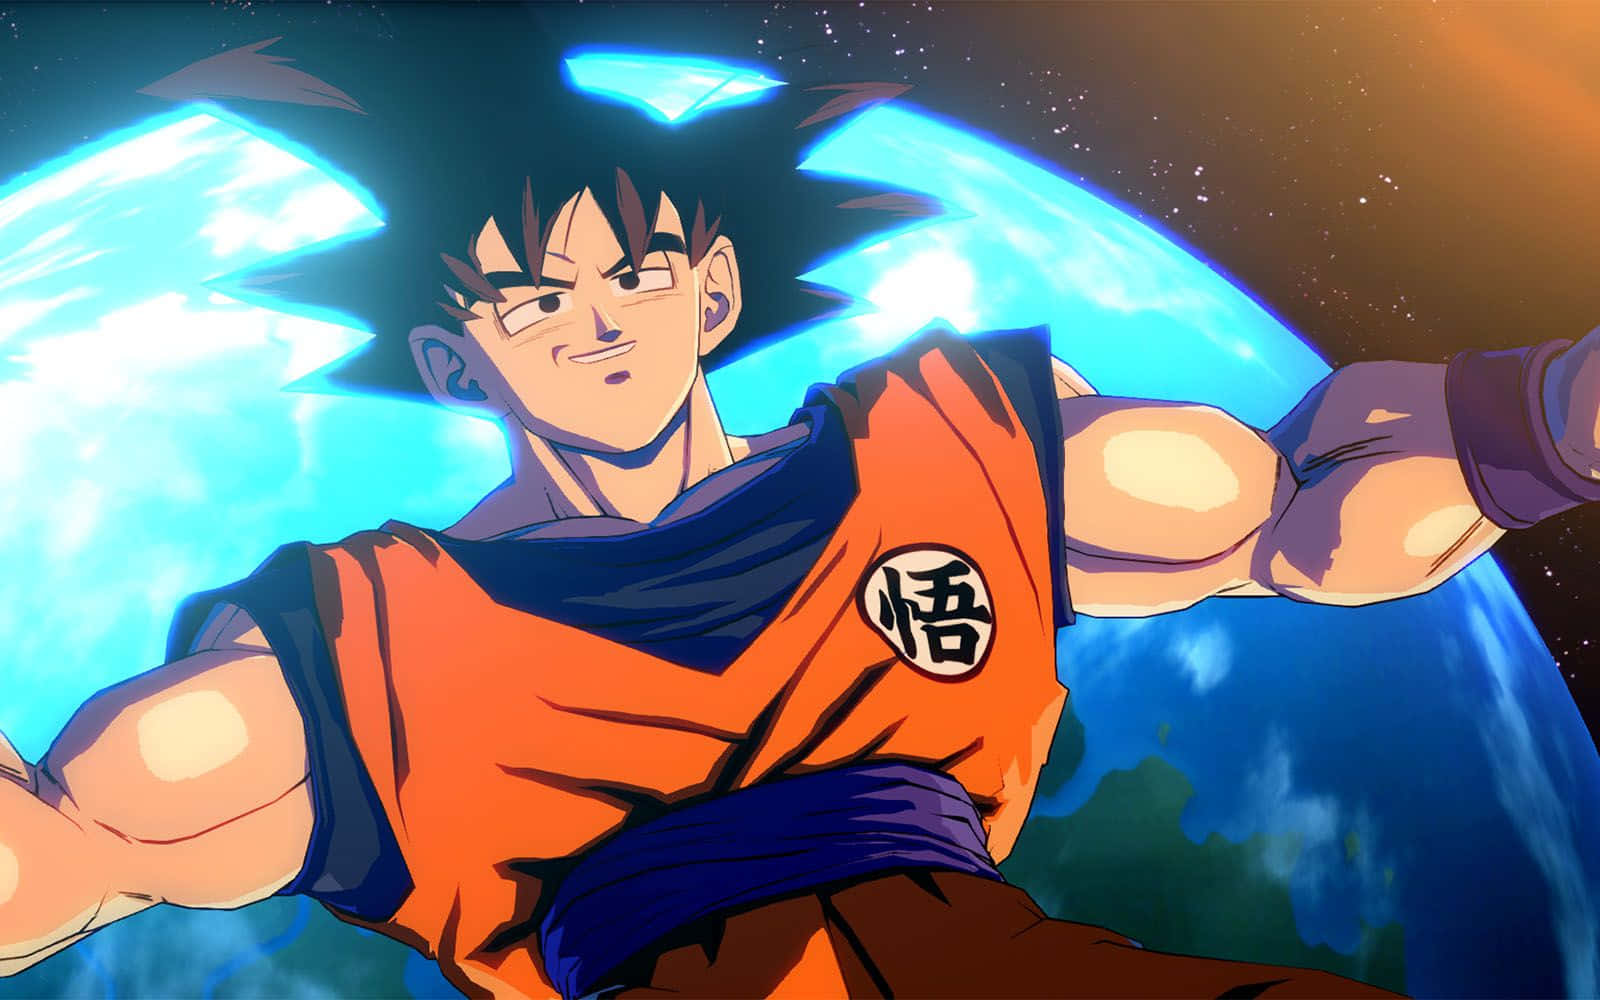 Imágenesde Goku En La Tierra De Dragonball Z.